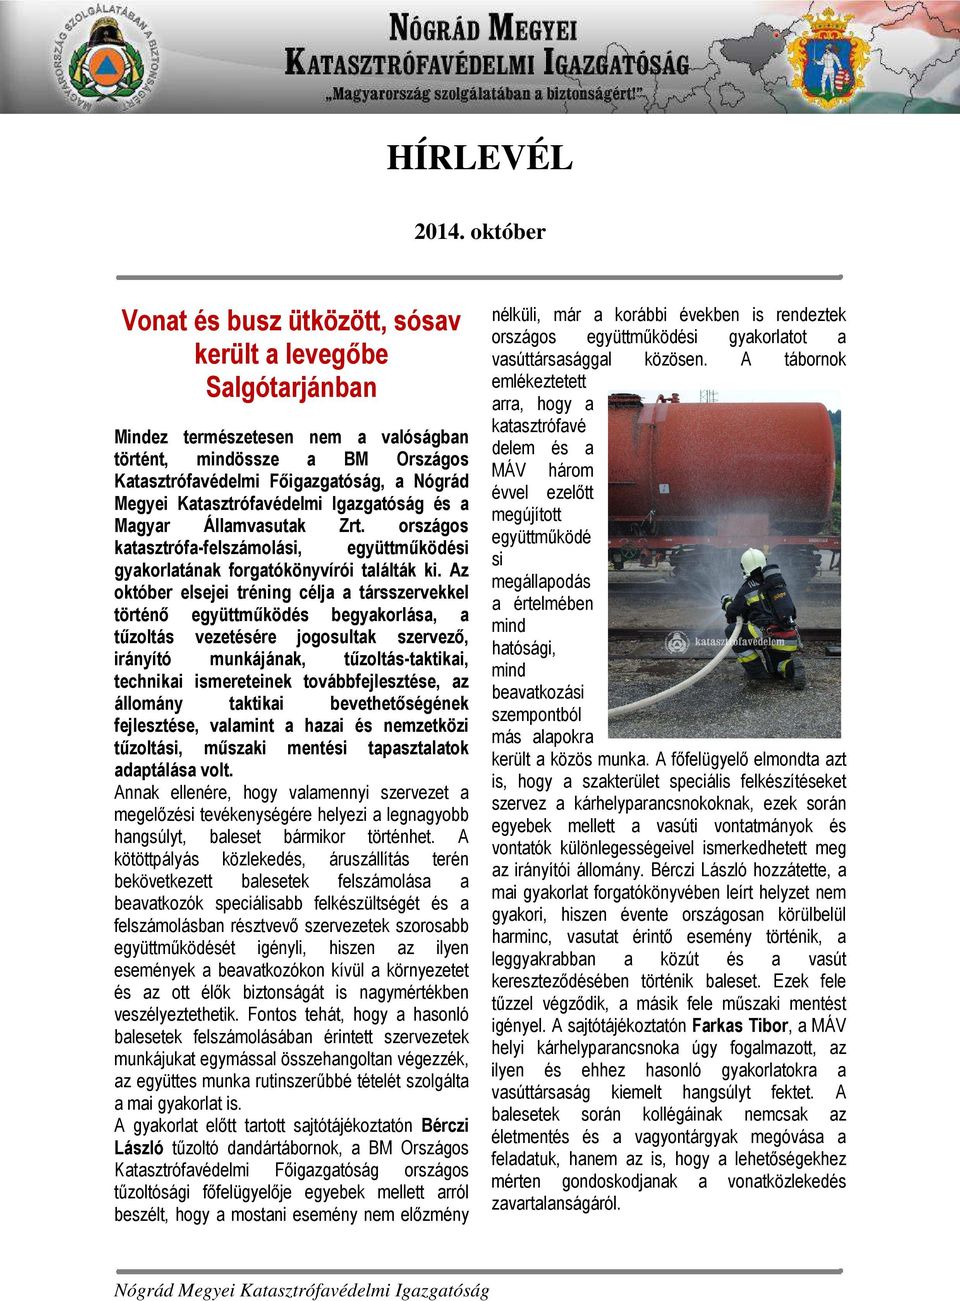 Katasztrófavédelmi Igazgatóság és a Magyar Államvasutak Zrt. országos katasztrófa-felszámolási, együttműködési gyakorlatának forgatókönyvírói találták ki.